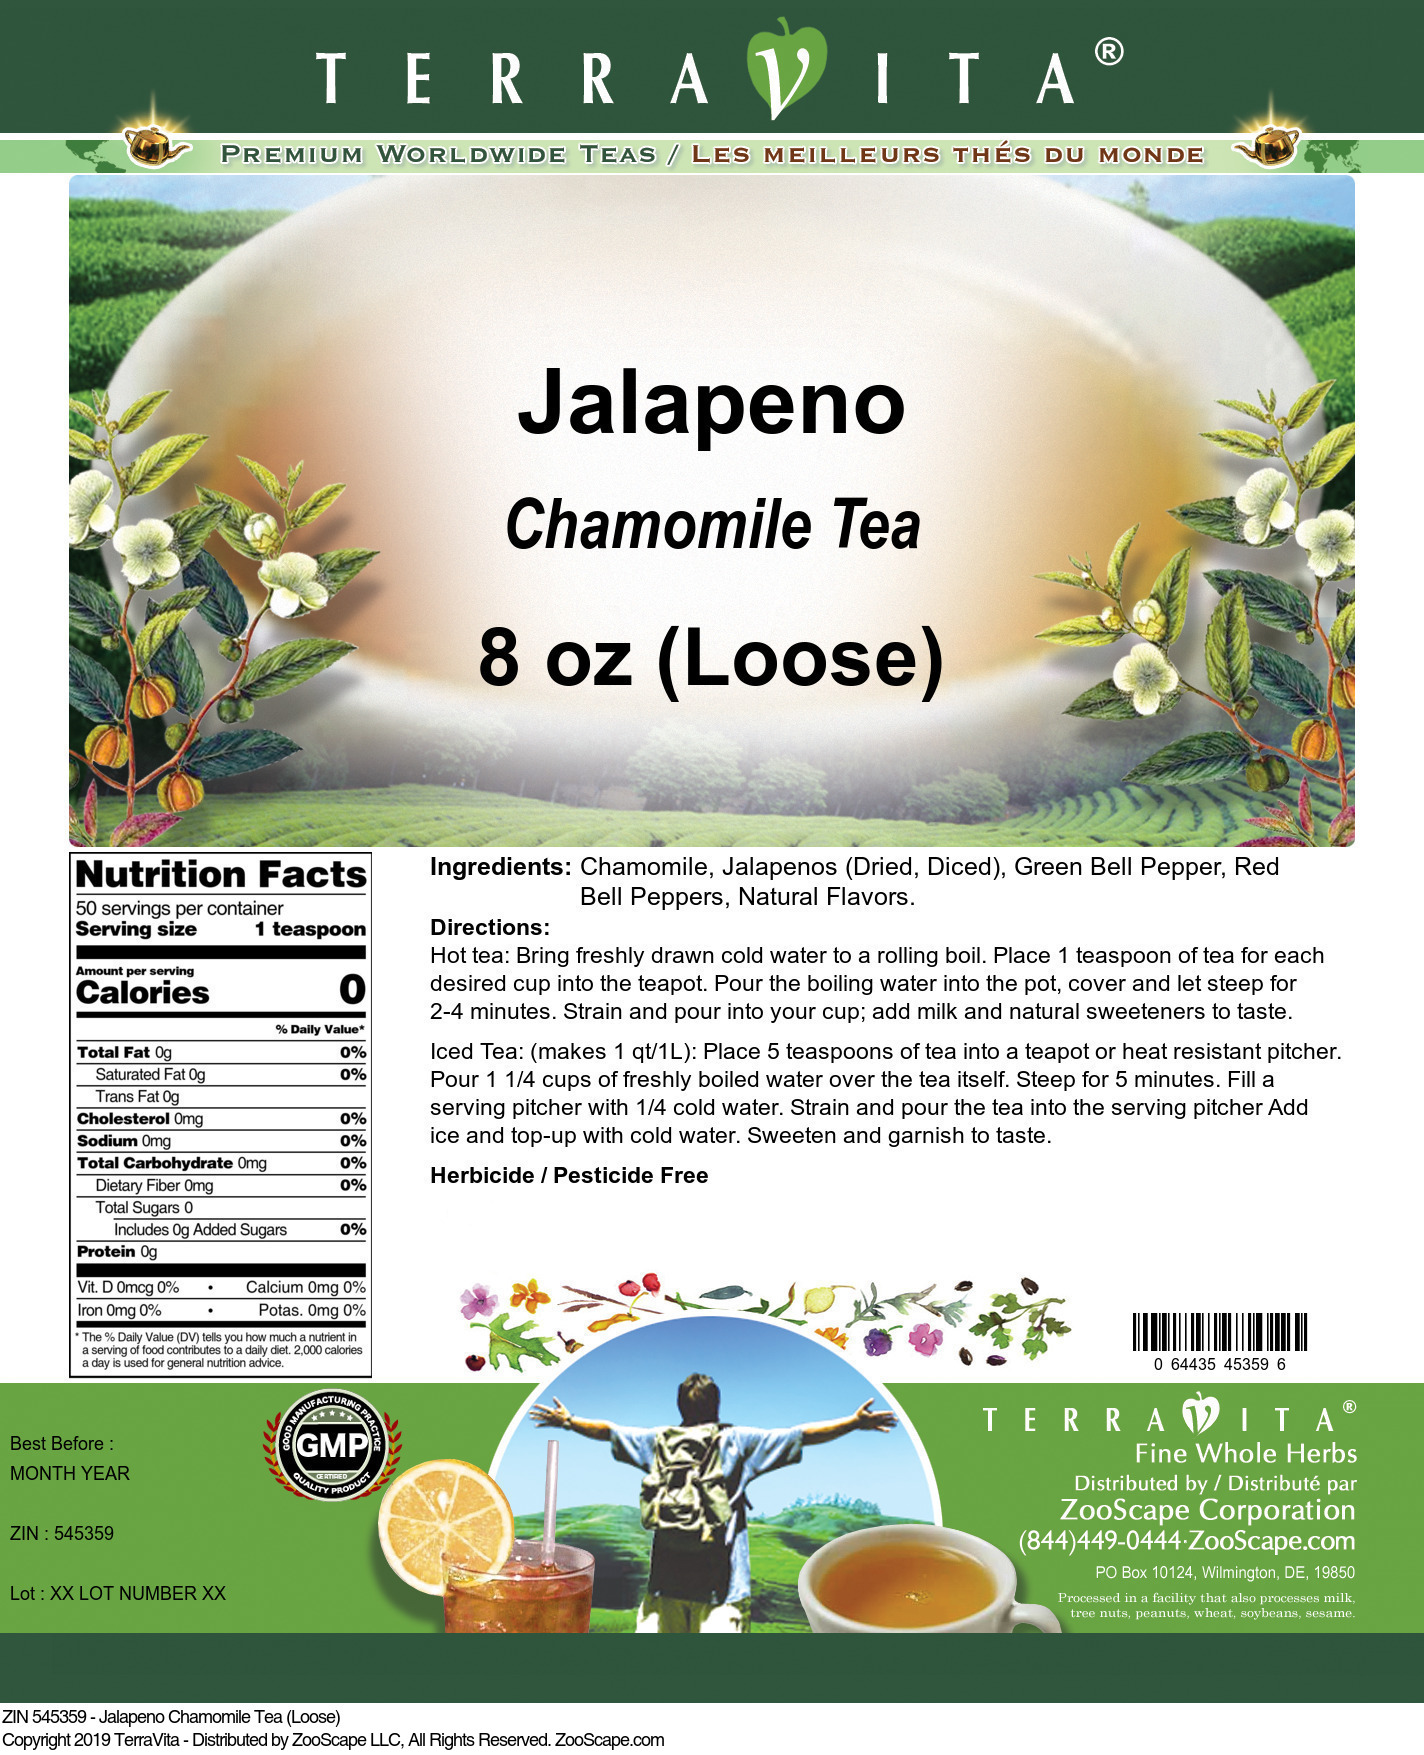 Jalapeno Chamomile Tea (Loose) - Label